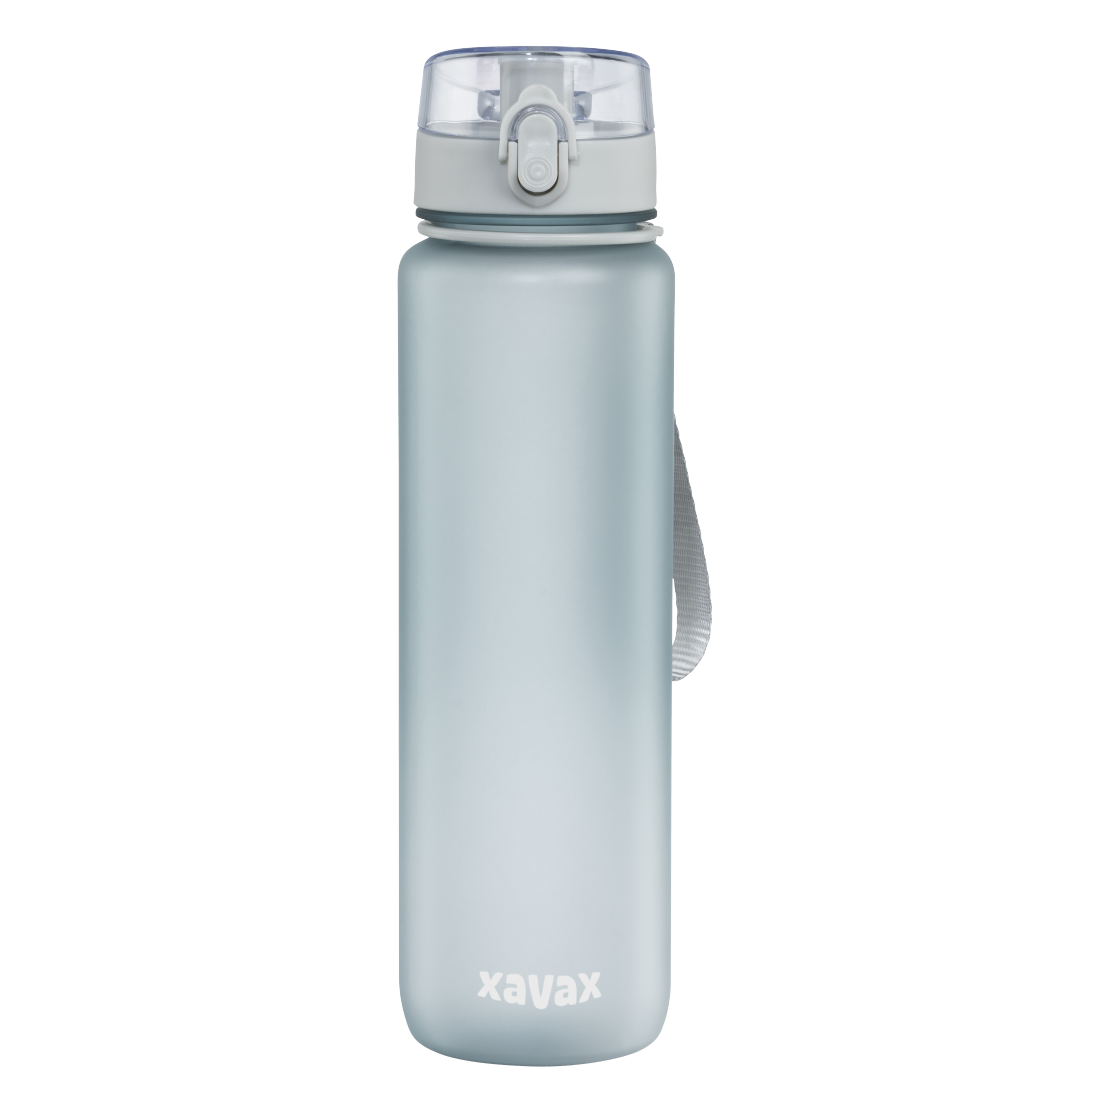 abx2 Druckfähige Abbildung 2 - Xavax, Sport-Trinkflasche, 1 l, auslaufsicher, Schlaufe, Einhandverschluss, Blau